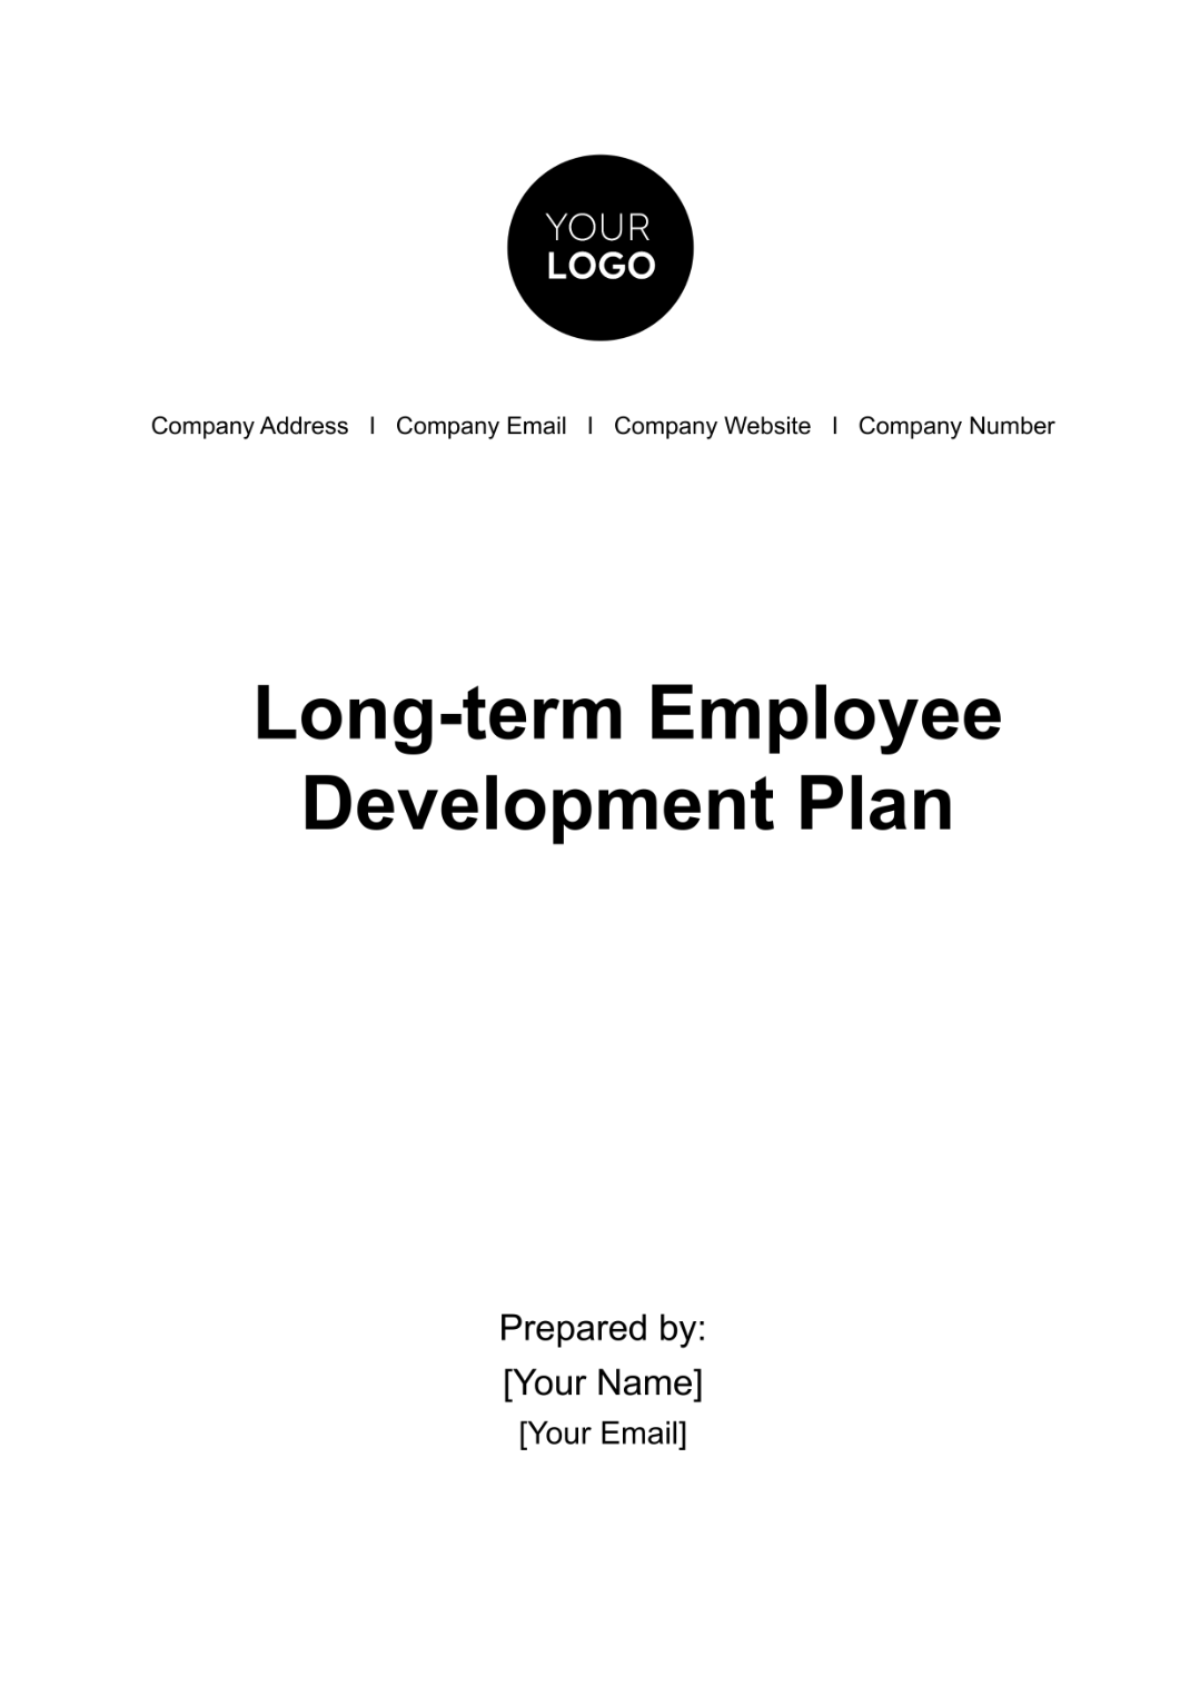 Long-term Employee Development Plan HR Template